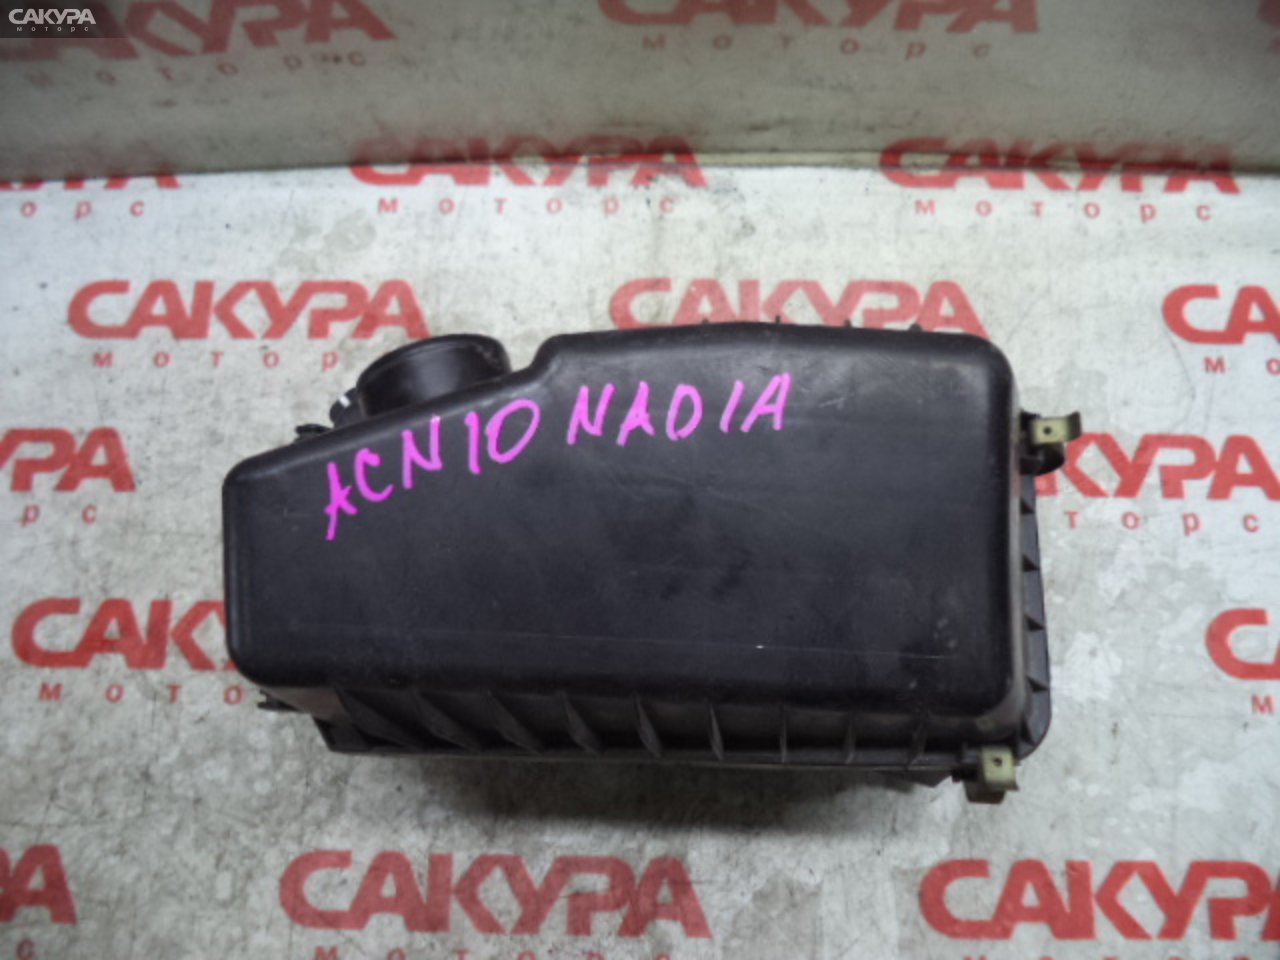 Корпус воздушного фильтра Toyota Nadia ACN10 1AZ-FSE: купить в Сакура Кемерово.